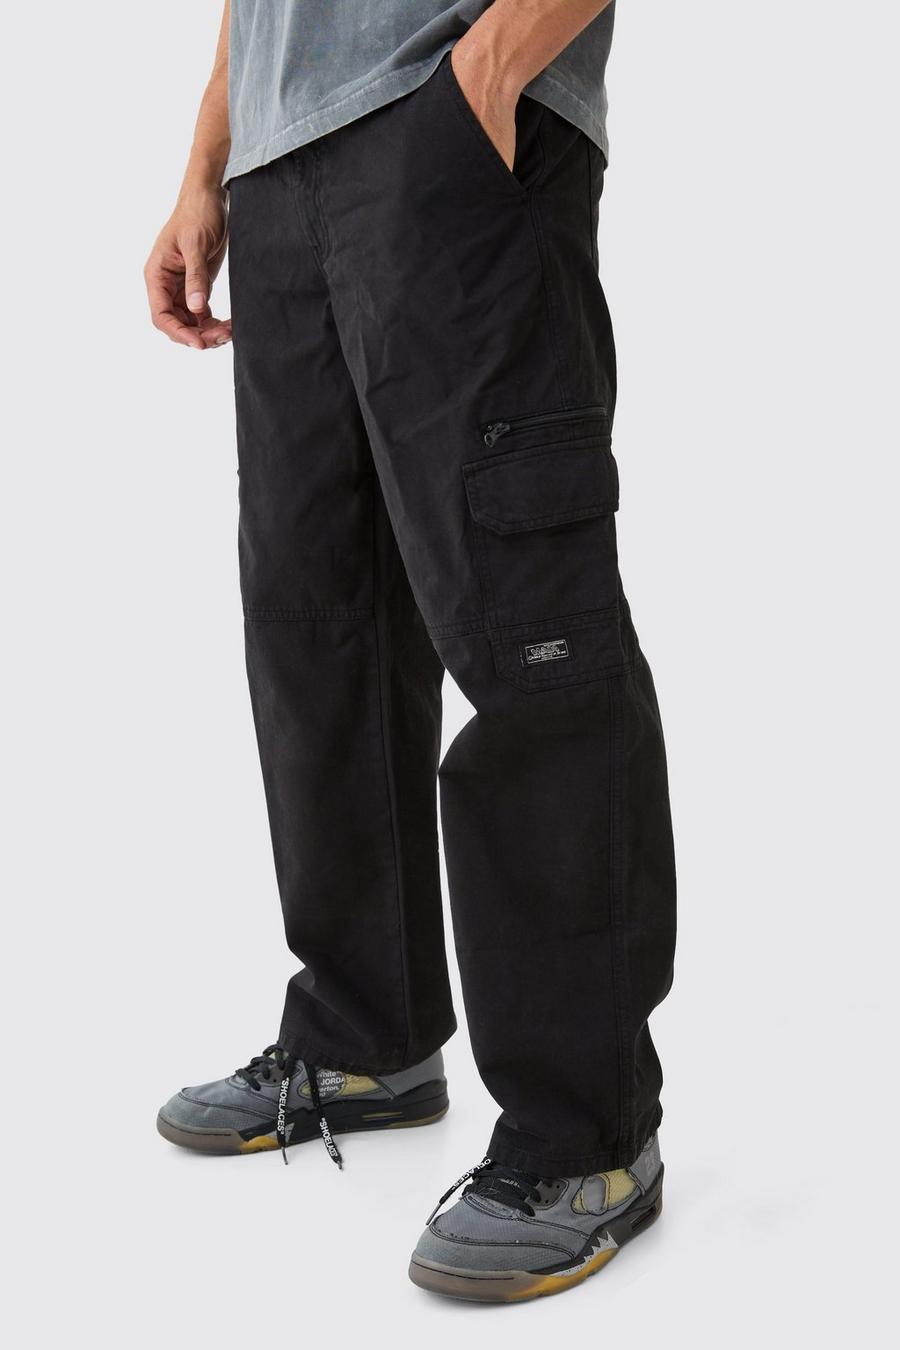 Pantalón cargo con cintura fija, cremallera y etiqueta de tela, Black